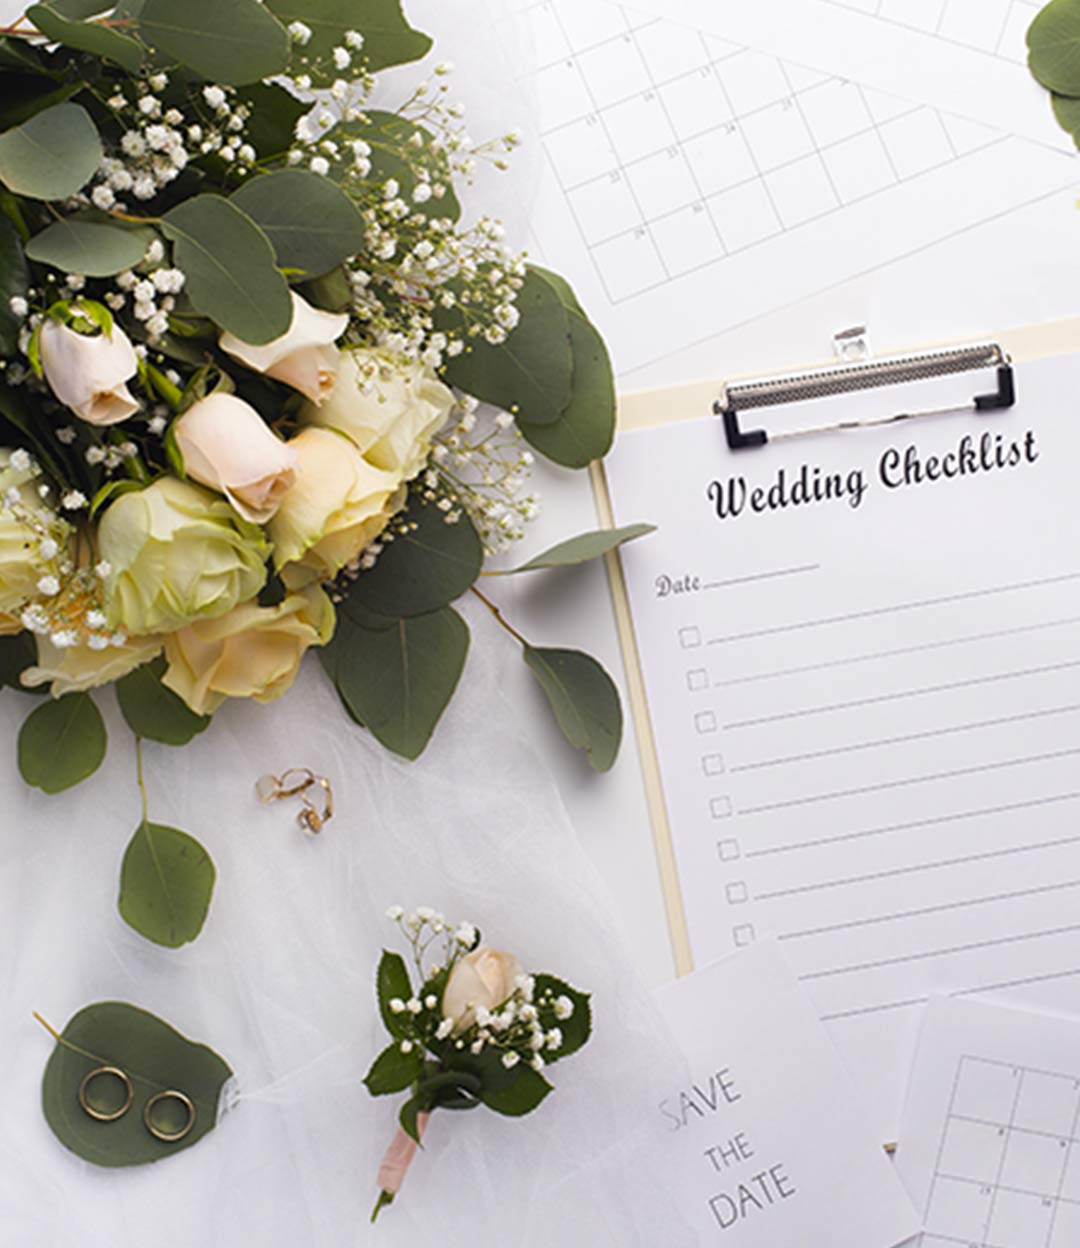  Bénéficiez de l’expérience : Wedding planner à votre mariage